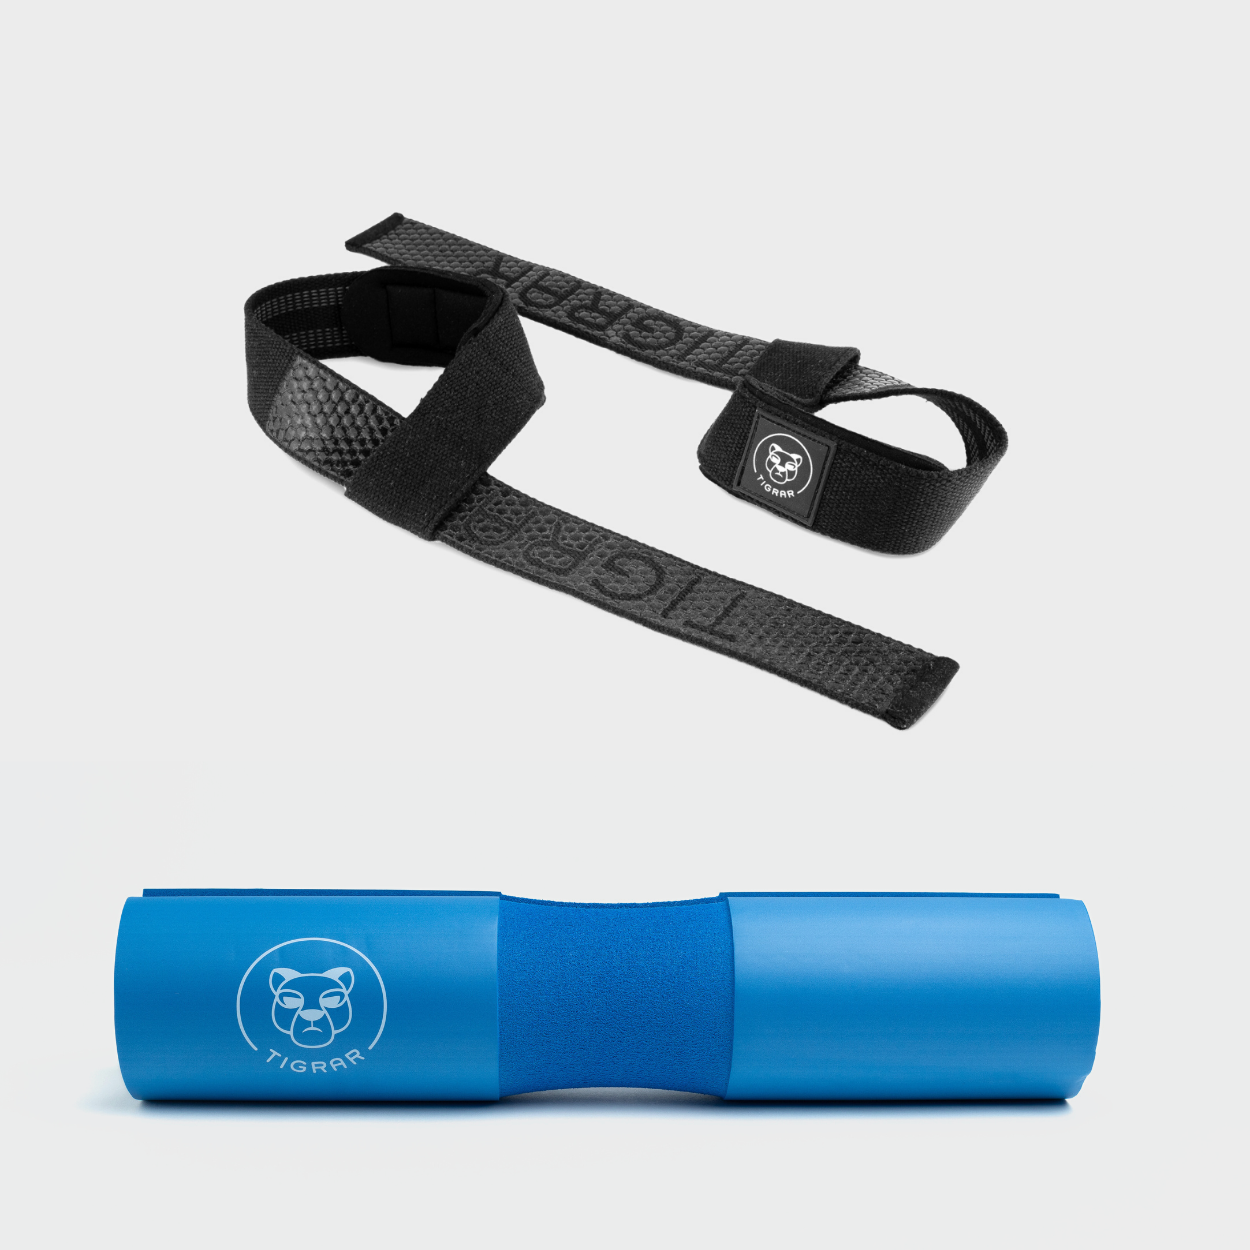 Krachtige combinatie van zwarte Tigrar straps en blauwe barbell pad, ideaal voor veiligheid en ondersteuning bij elke lift.